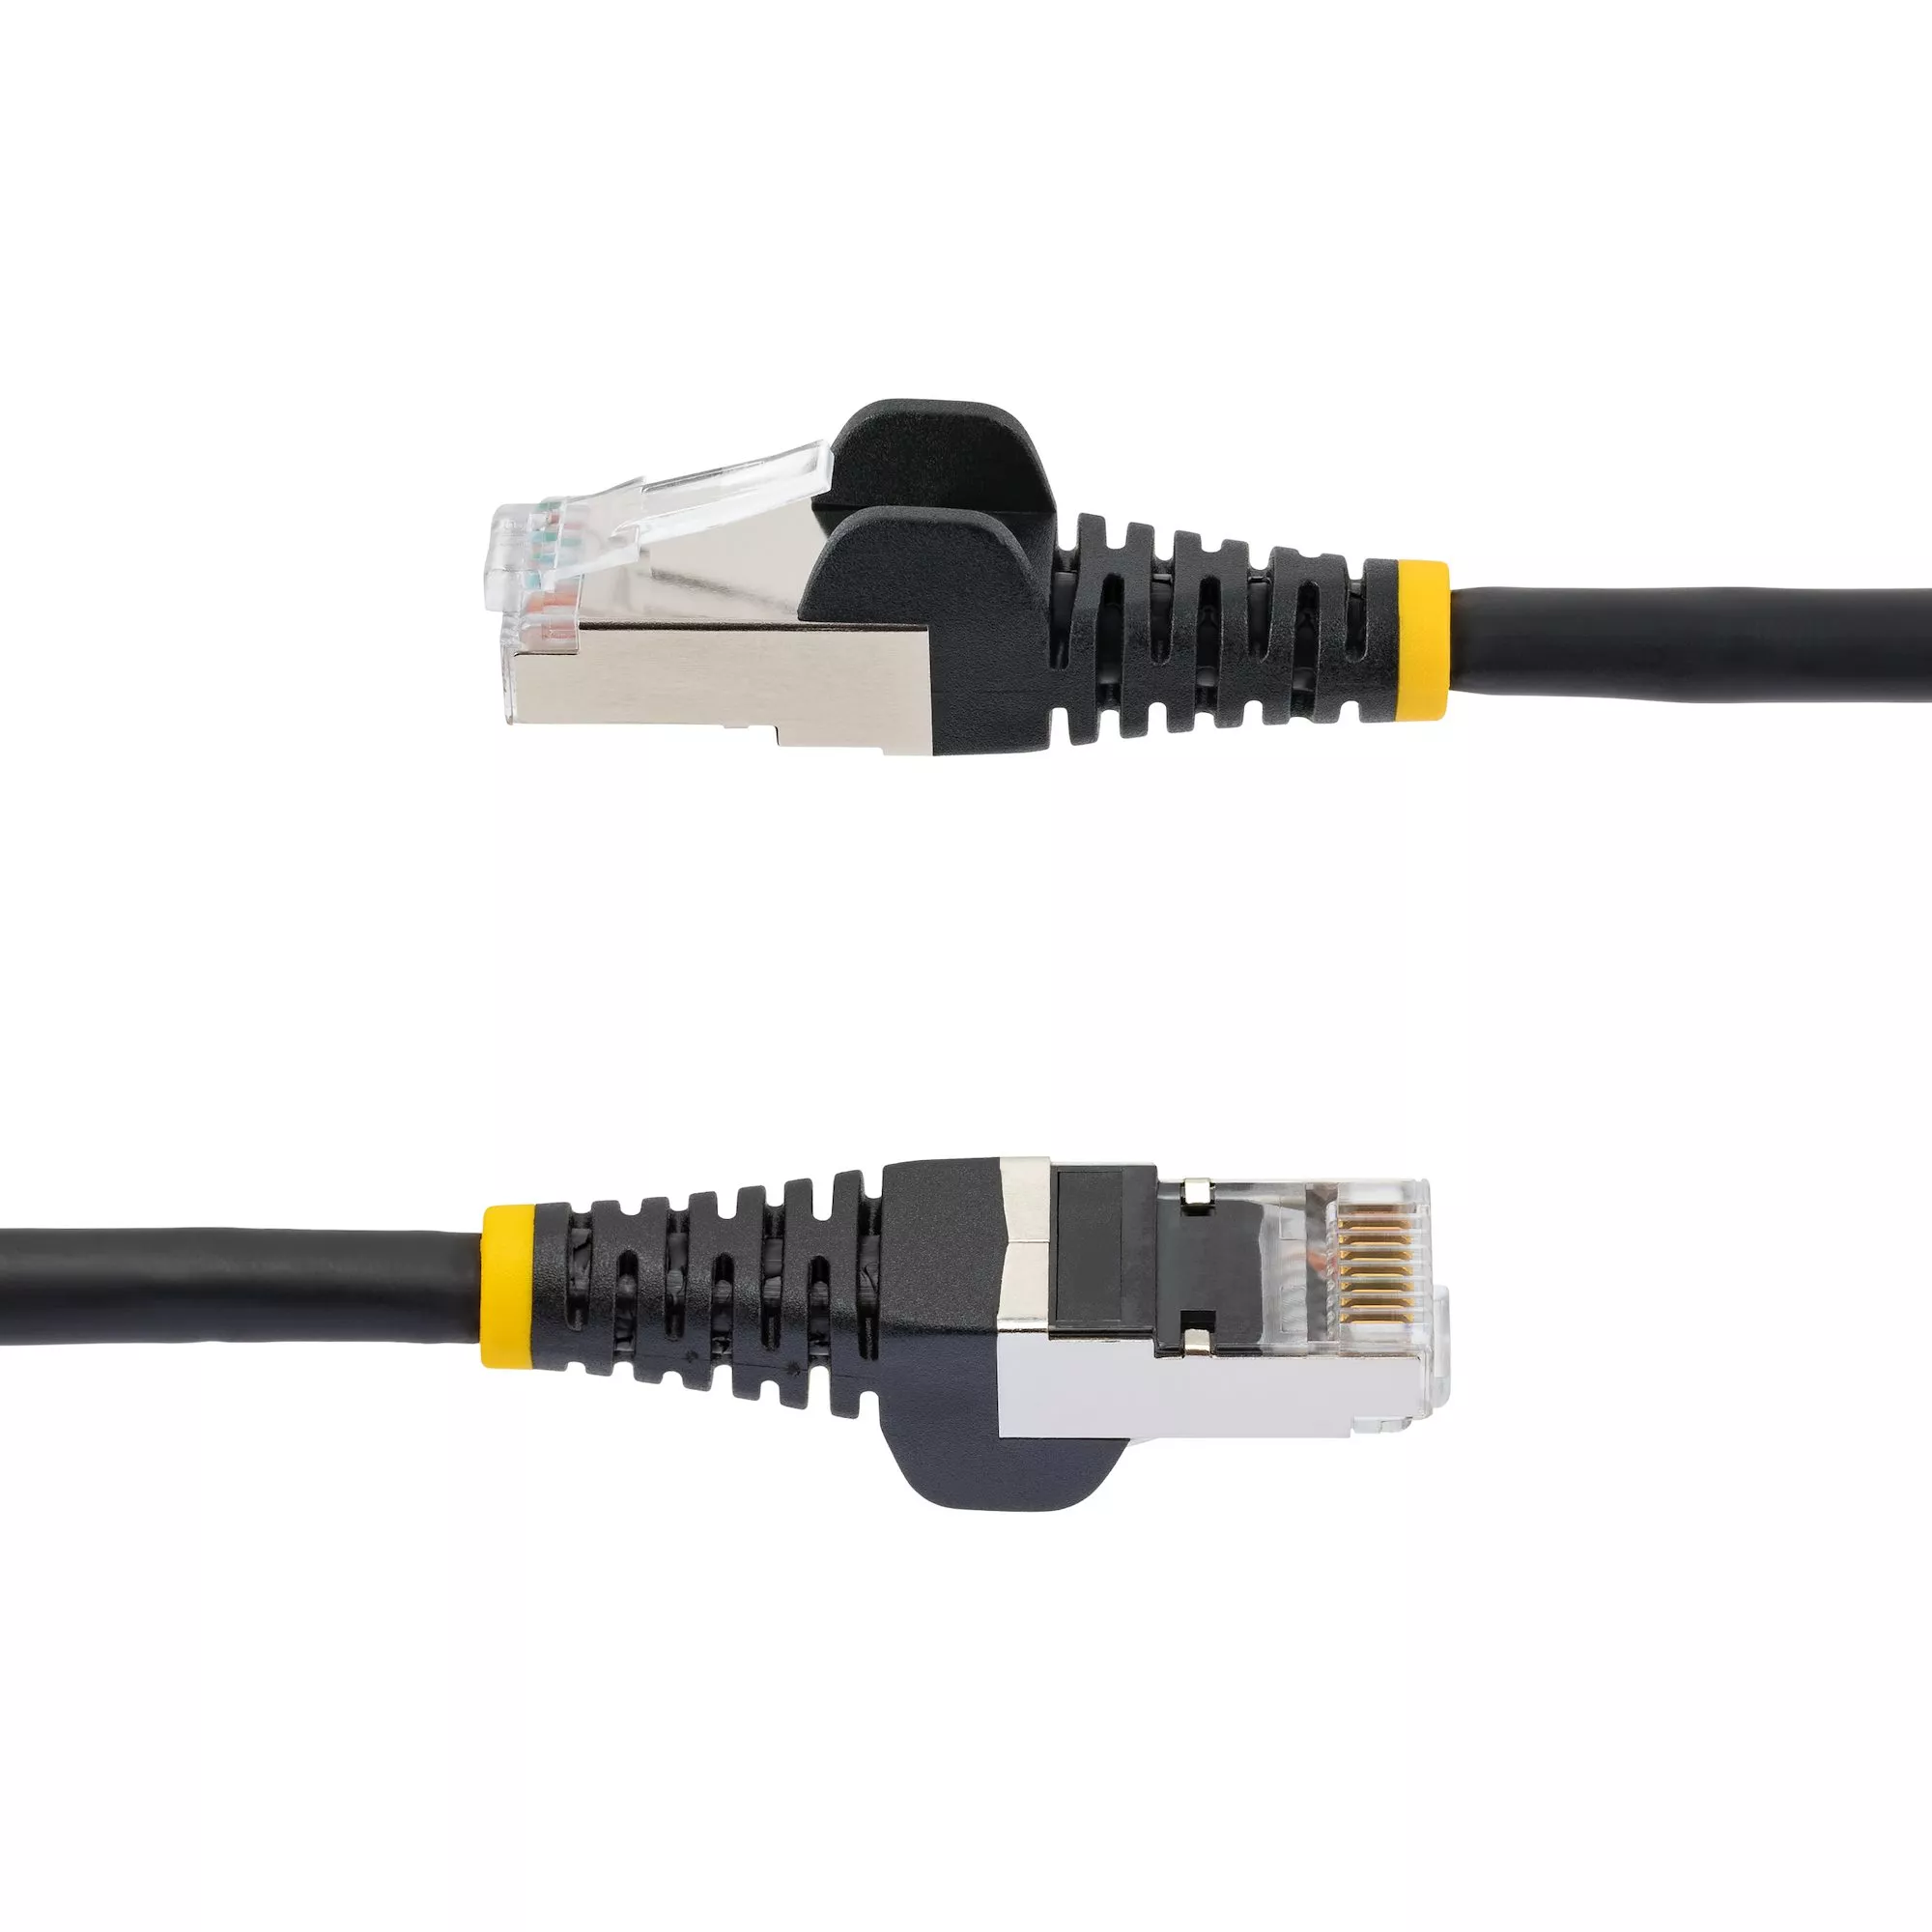 Achat StarTech.com Câble Ethernet CAT6a 10m - Low Smoke sur hello RSE - visuel 3